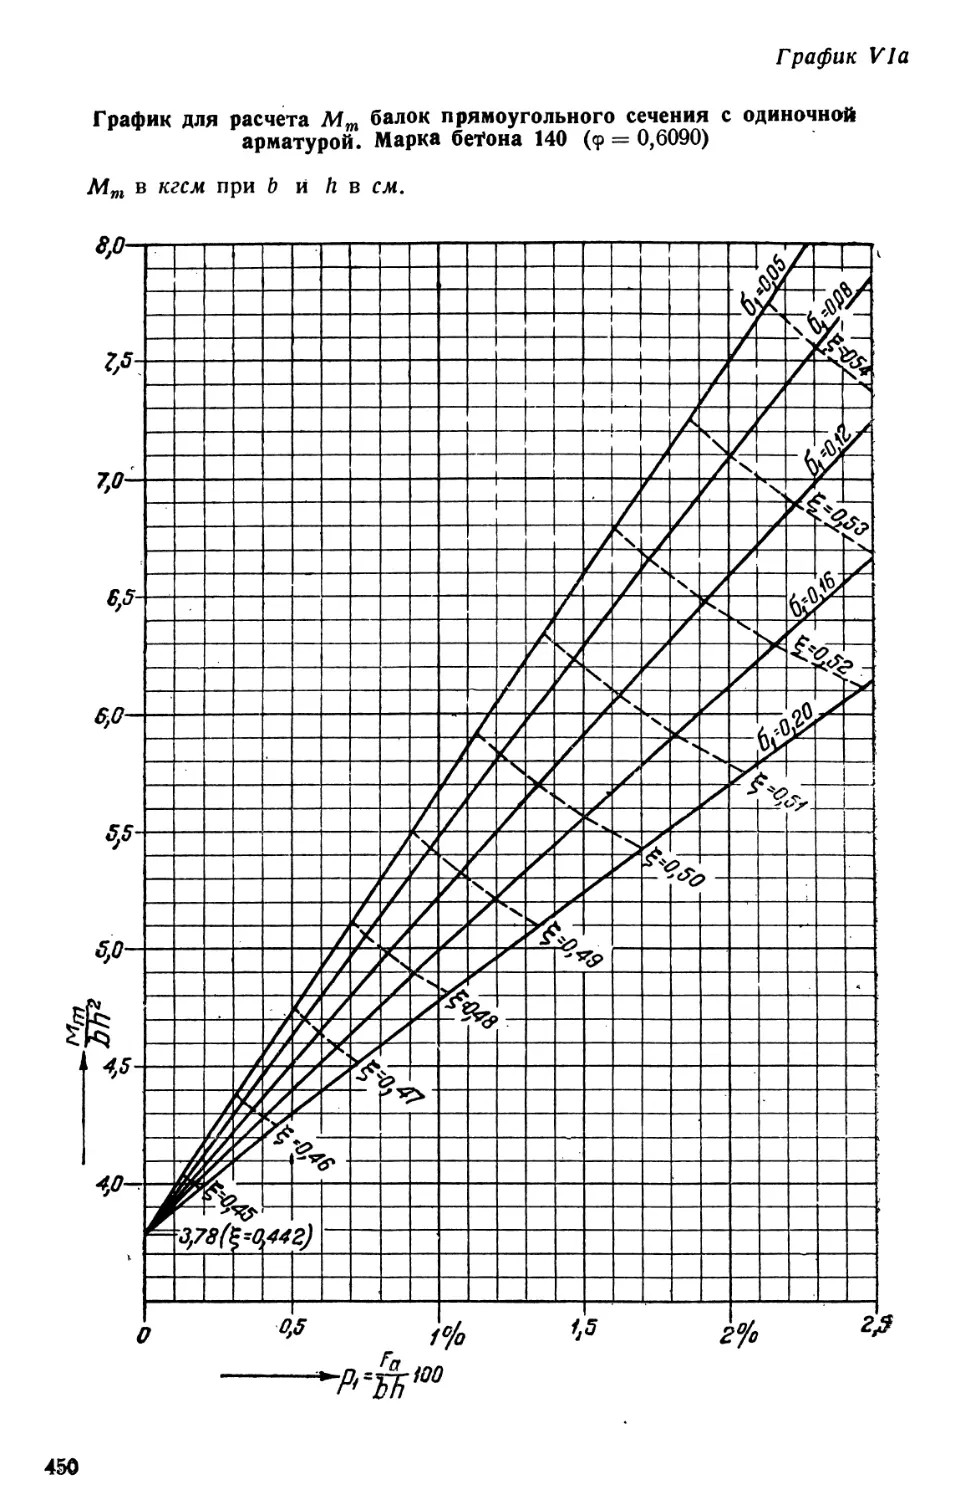 VI. а, б, в, г, д. Графики расчета Мт для балок прямоугольного сечения с одиночной арматурой